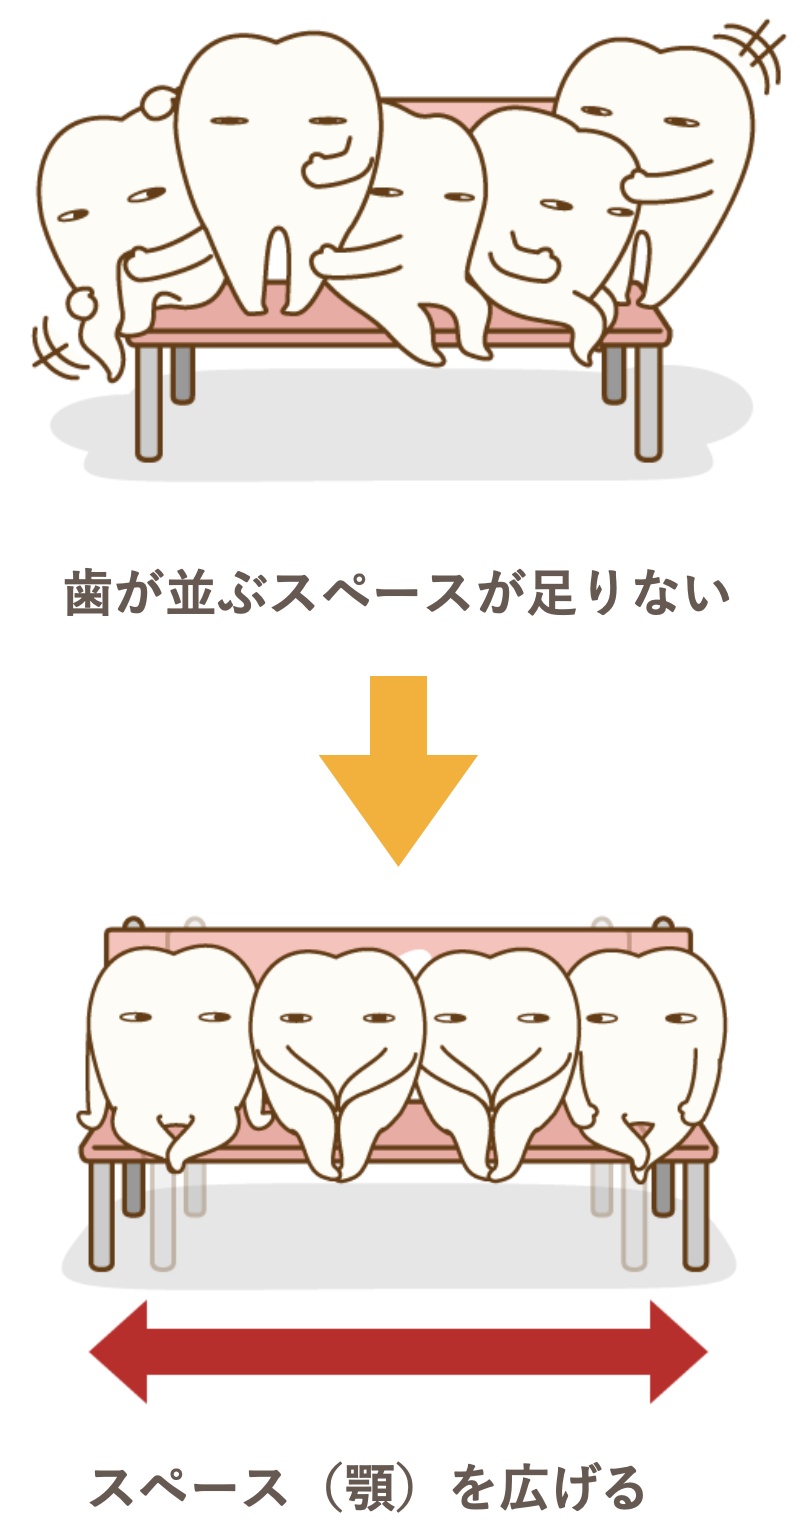 歯が並ぶスペースが足りない→スペース（顎）を広げる